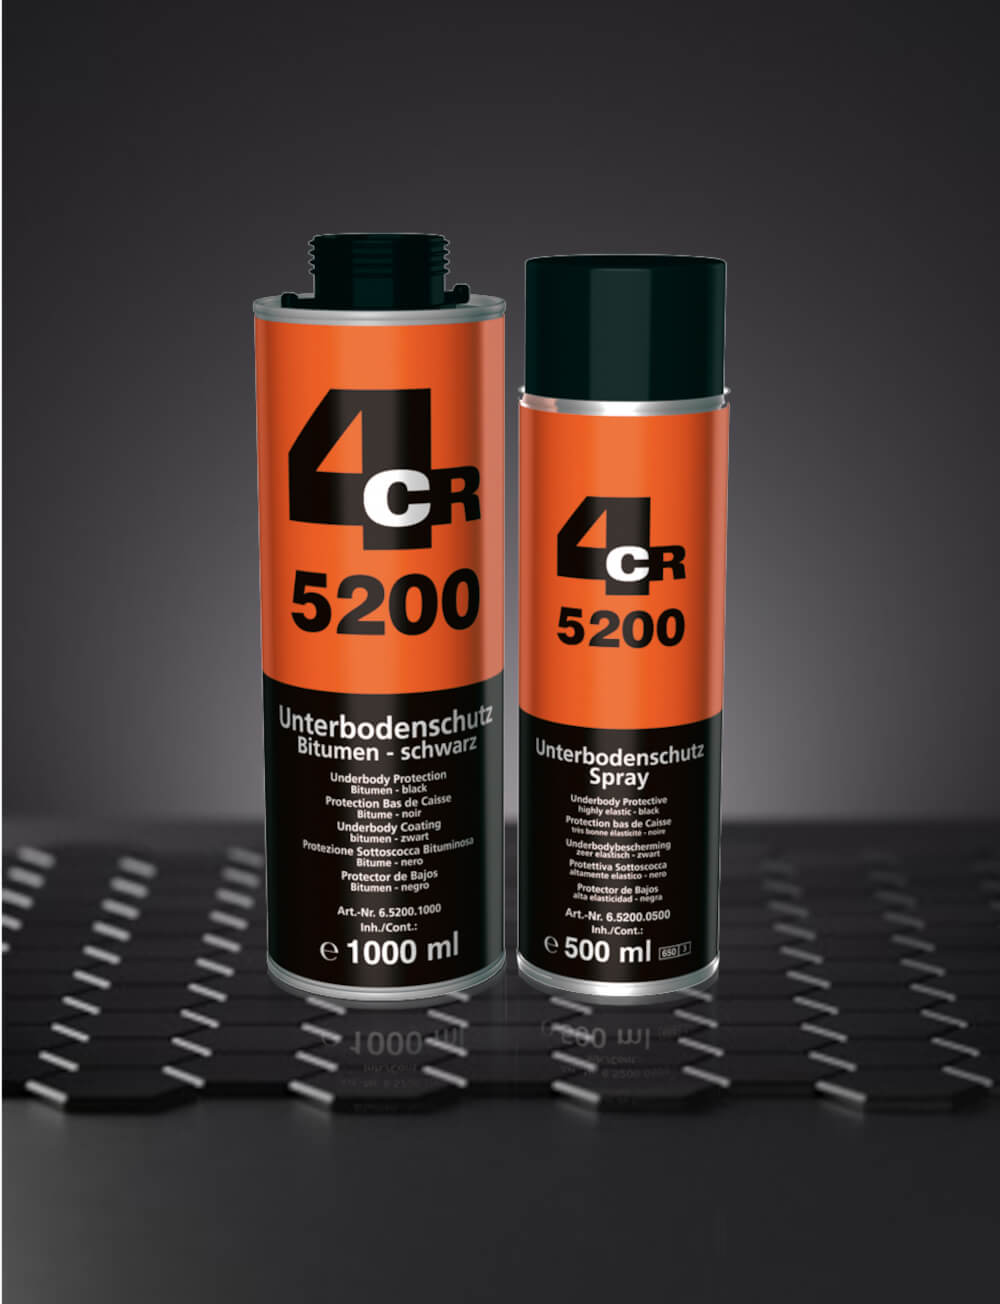 5200 Unterbodenschutz Bitumen - 4CR